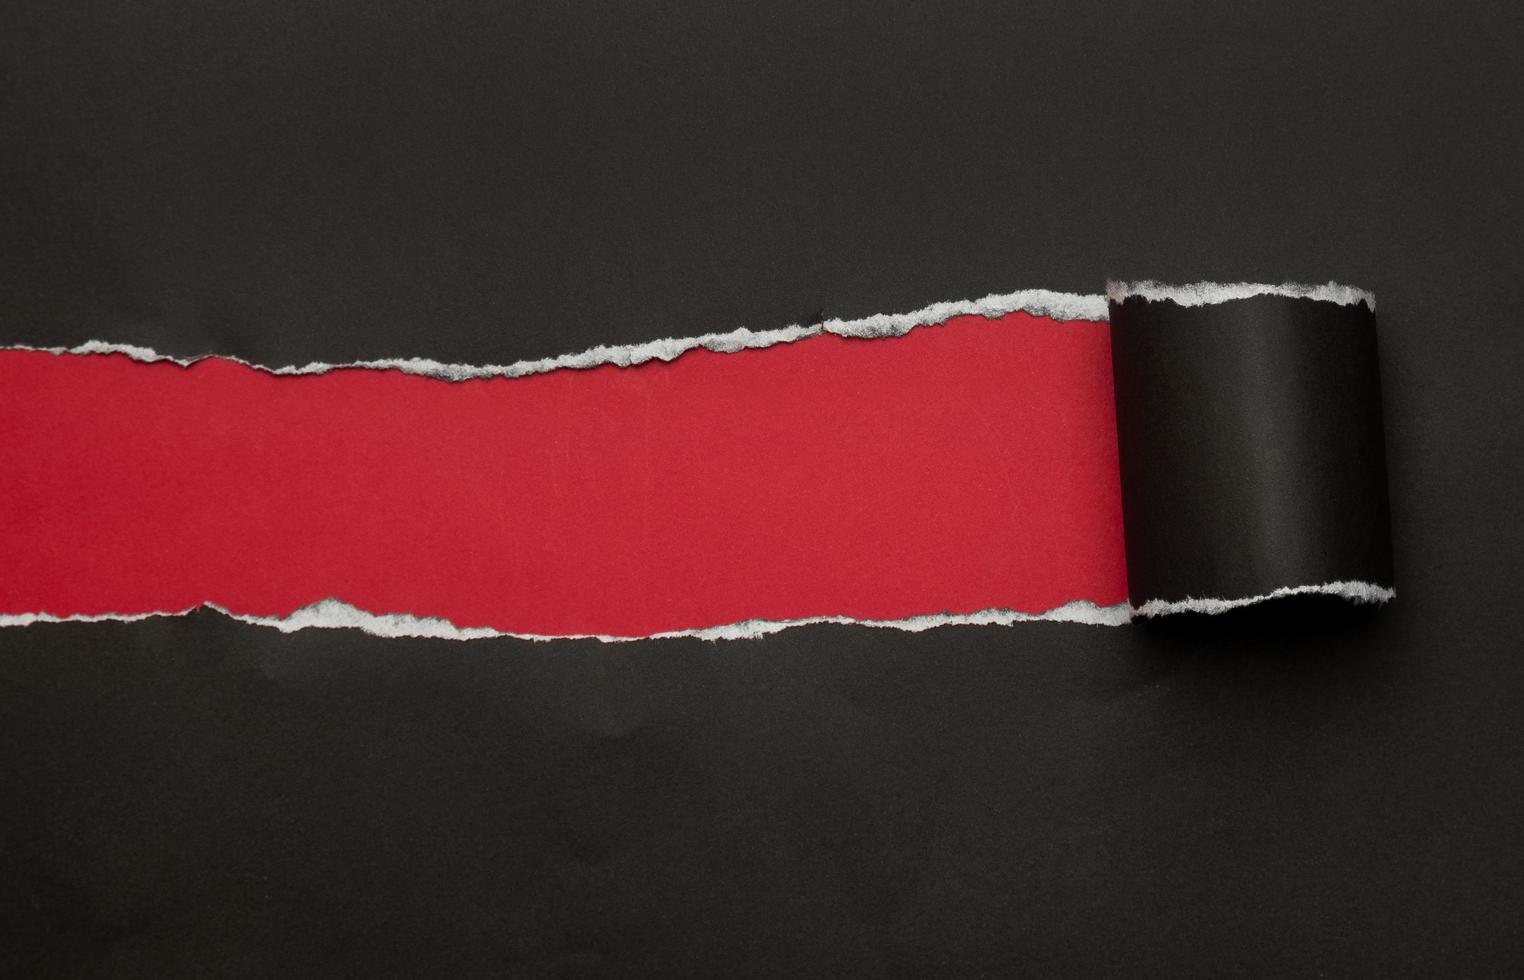 schwarzes zerrissenes Papier auf rotem Hintergrund foto